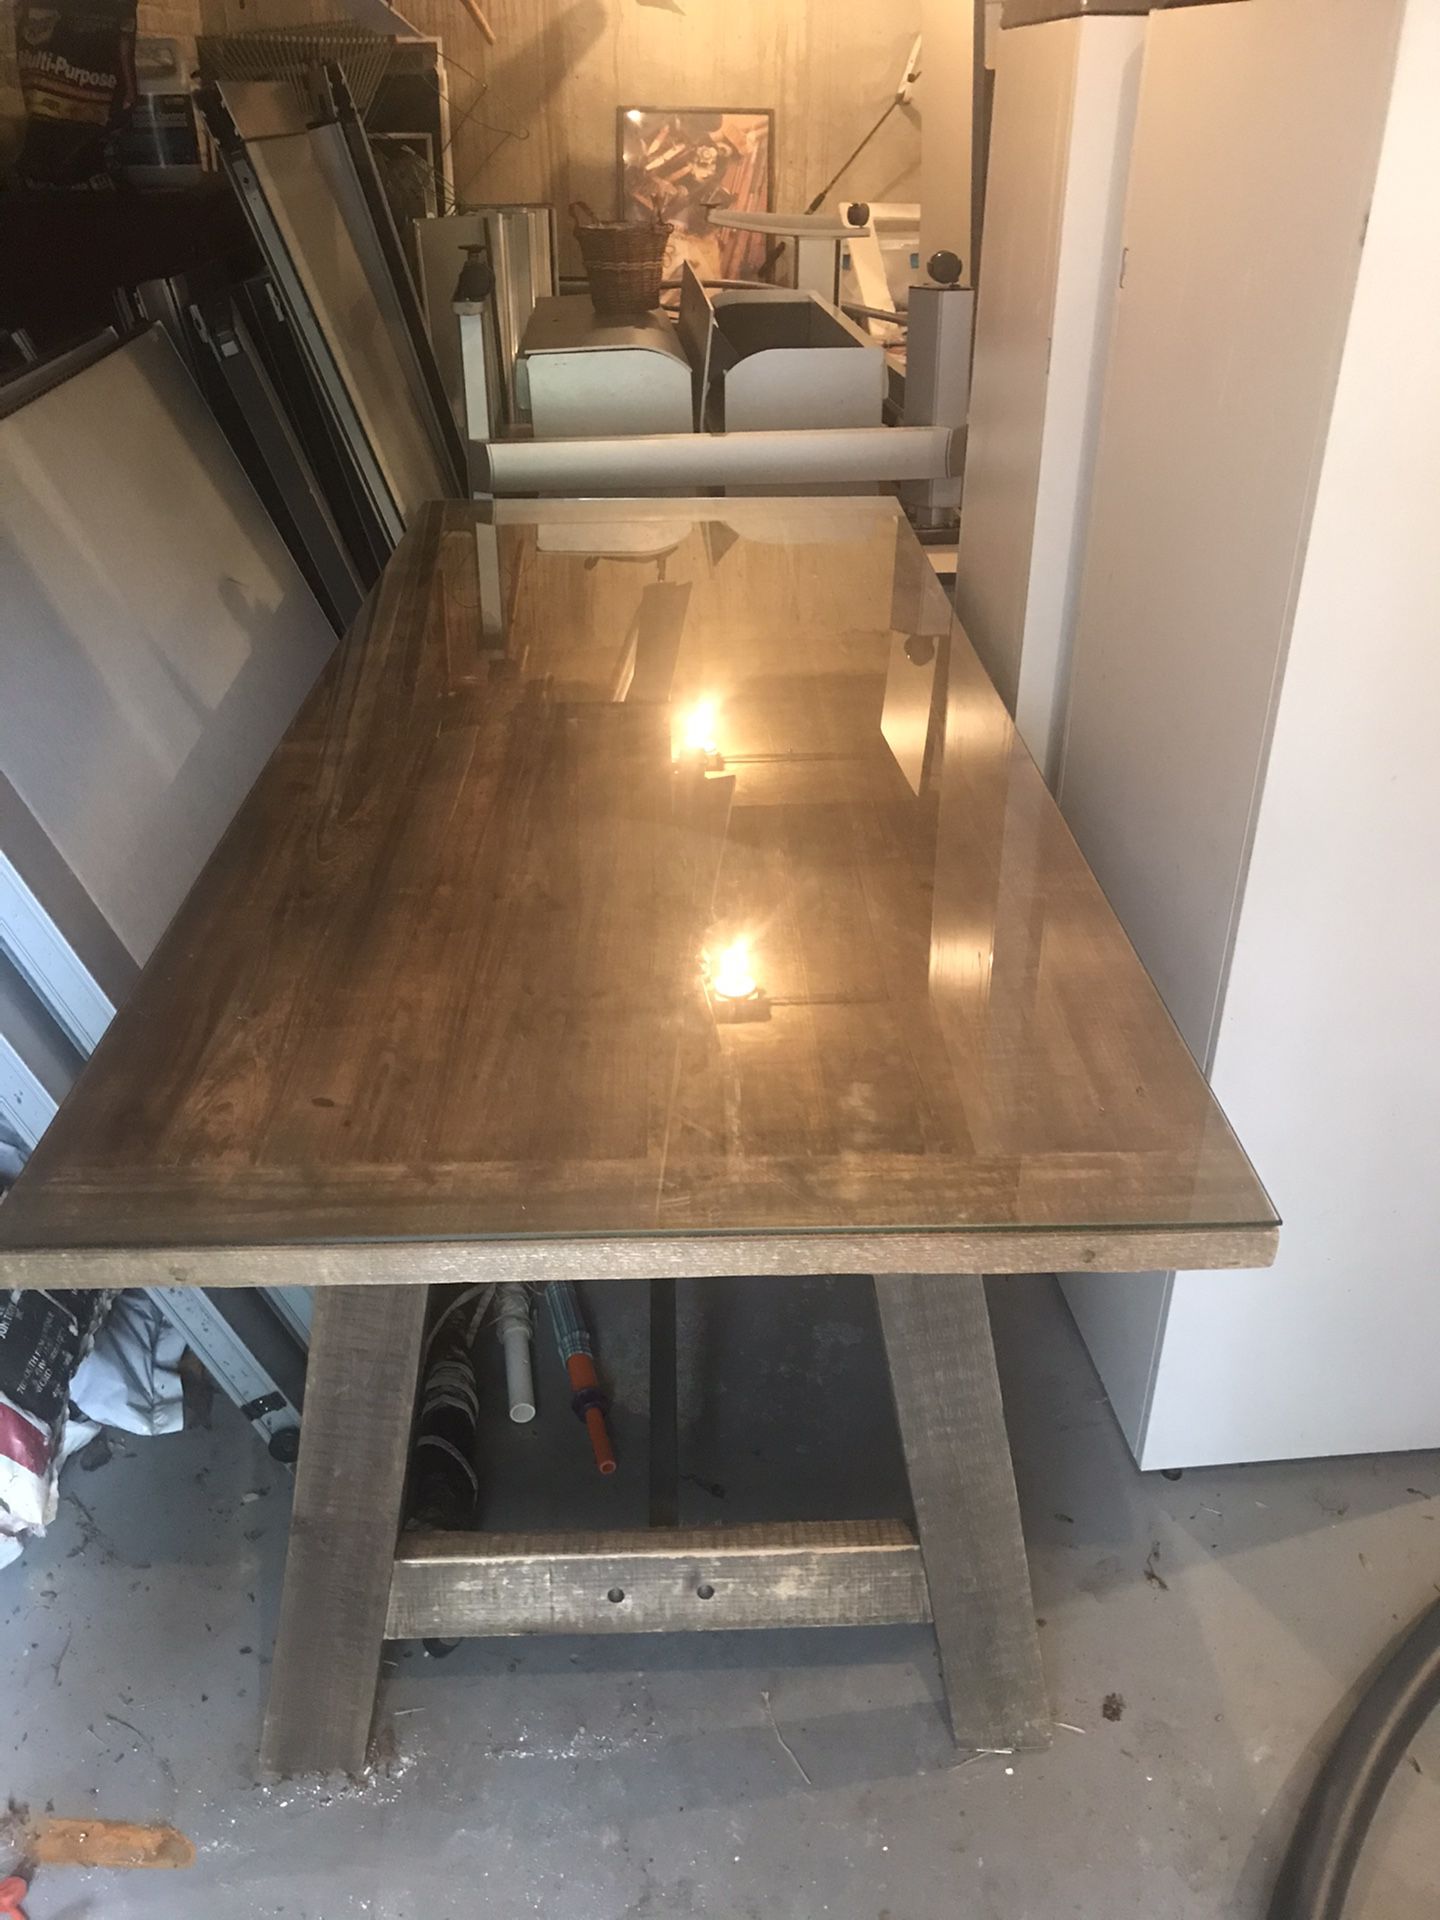 Restoration Hardware Dining room/ boardroom Table